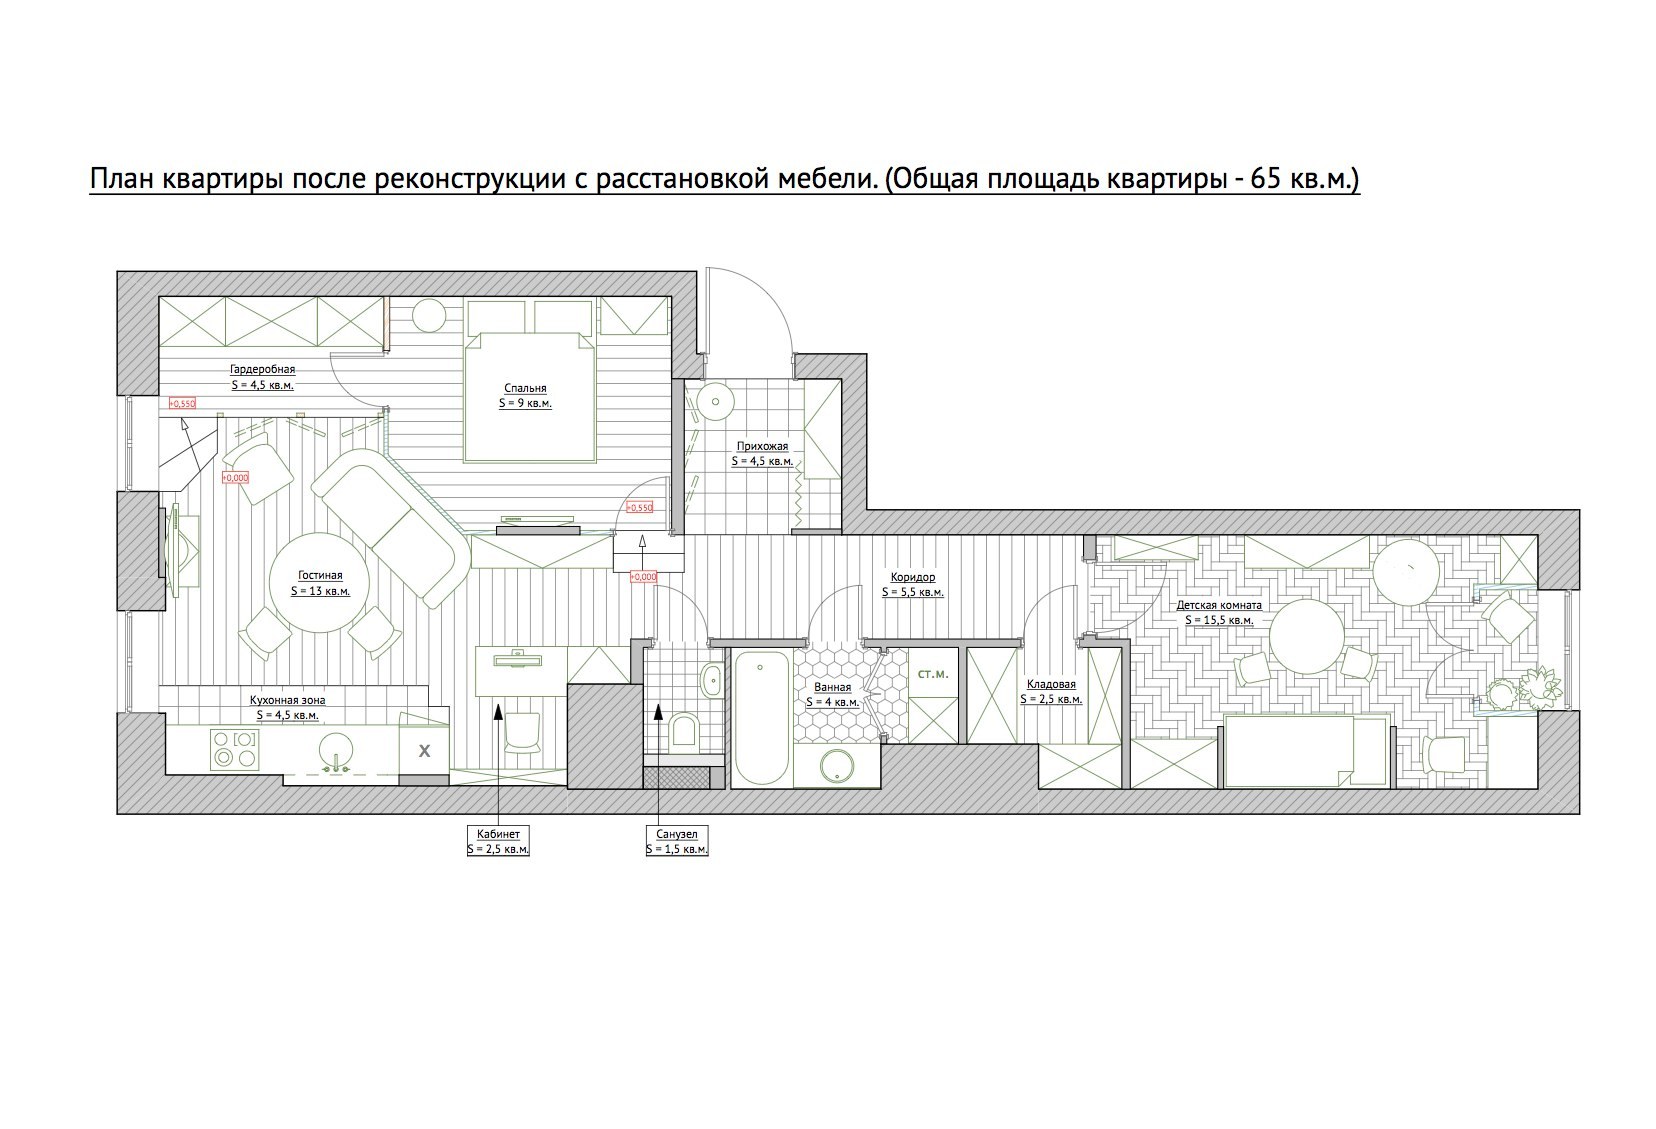 Квартира Распашонка Планировка 2 Комнатная Дизайн Проект